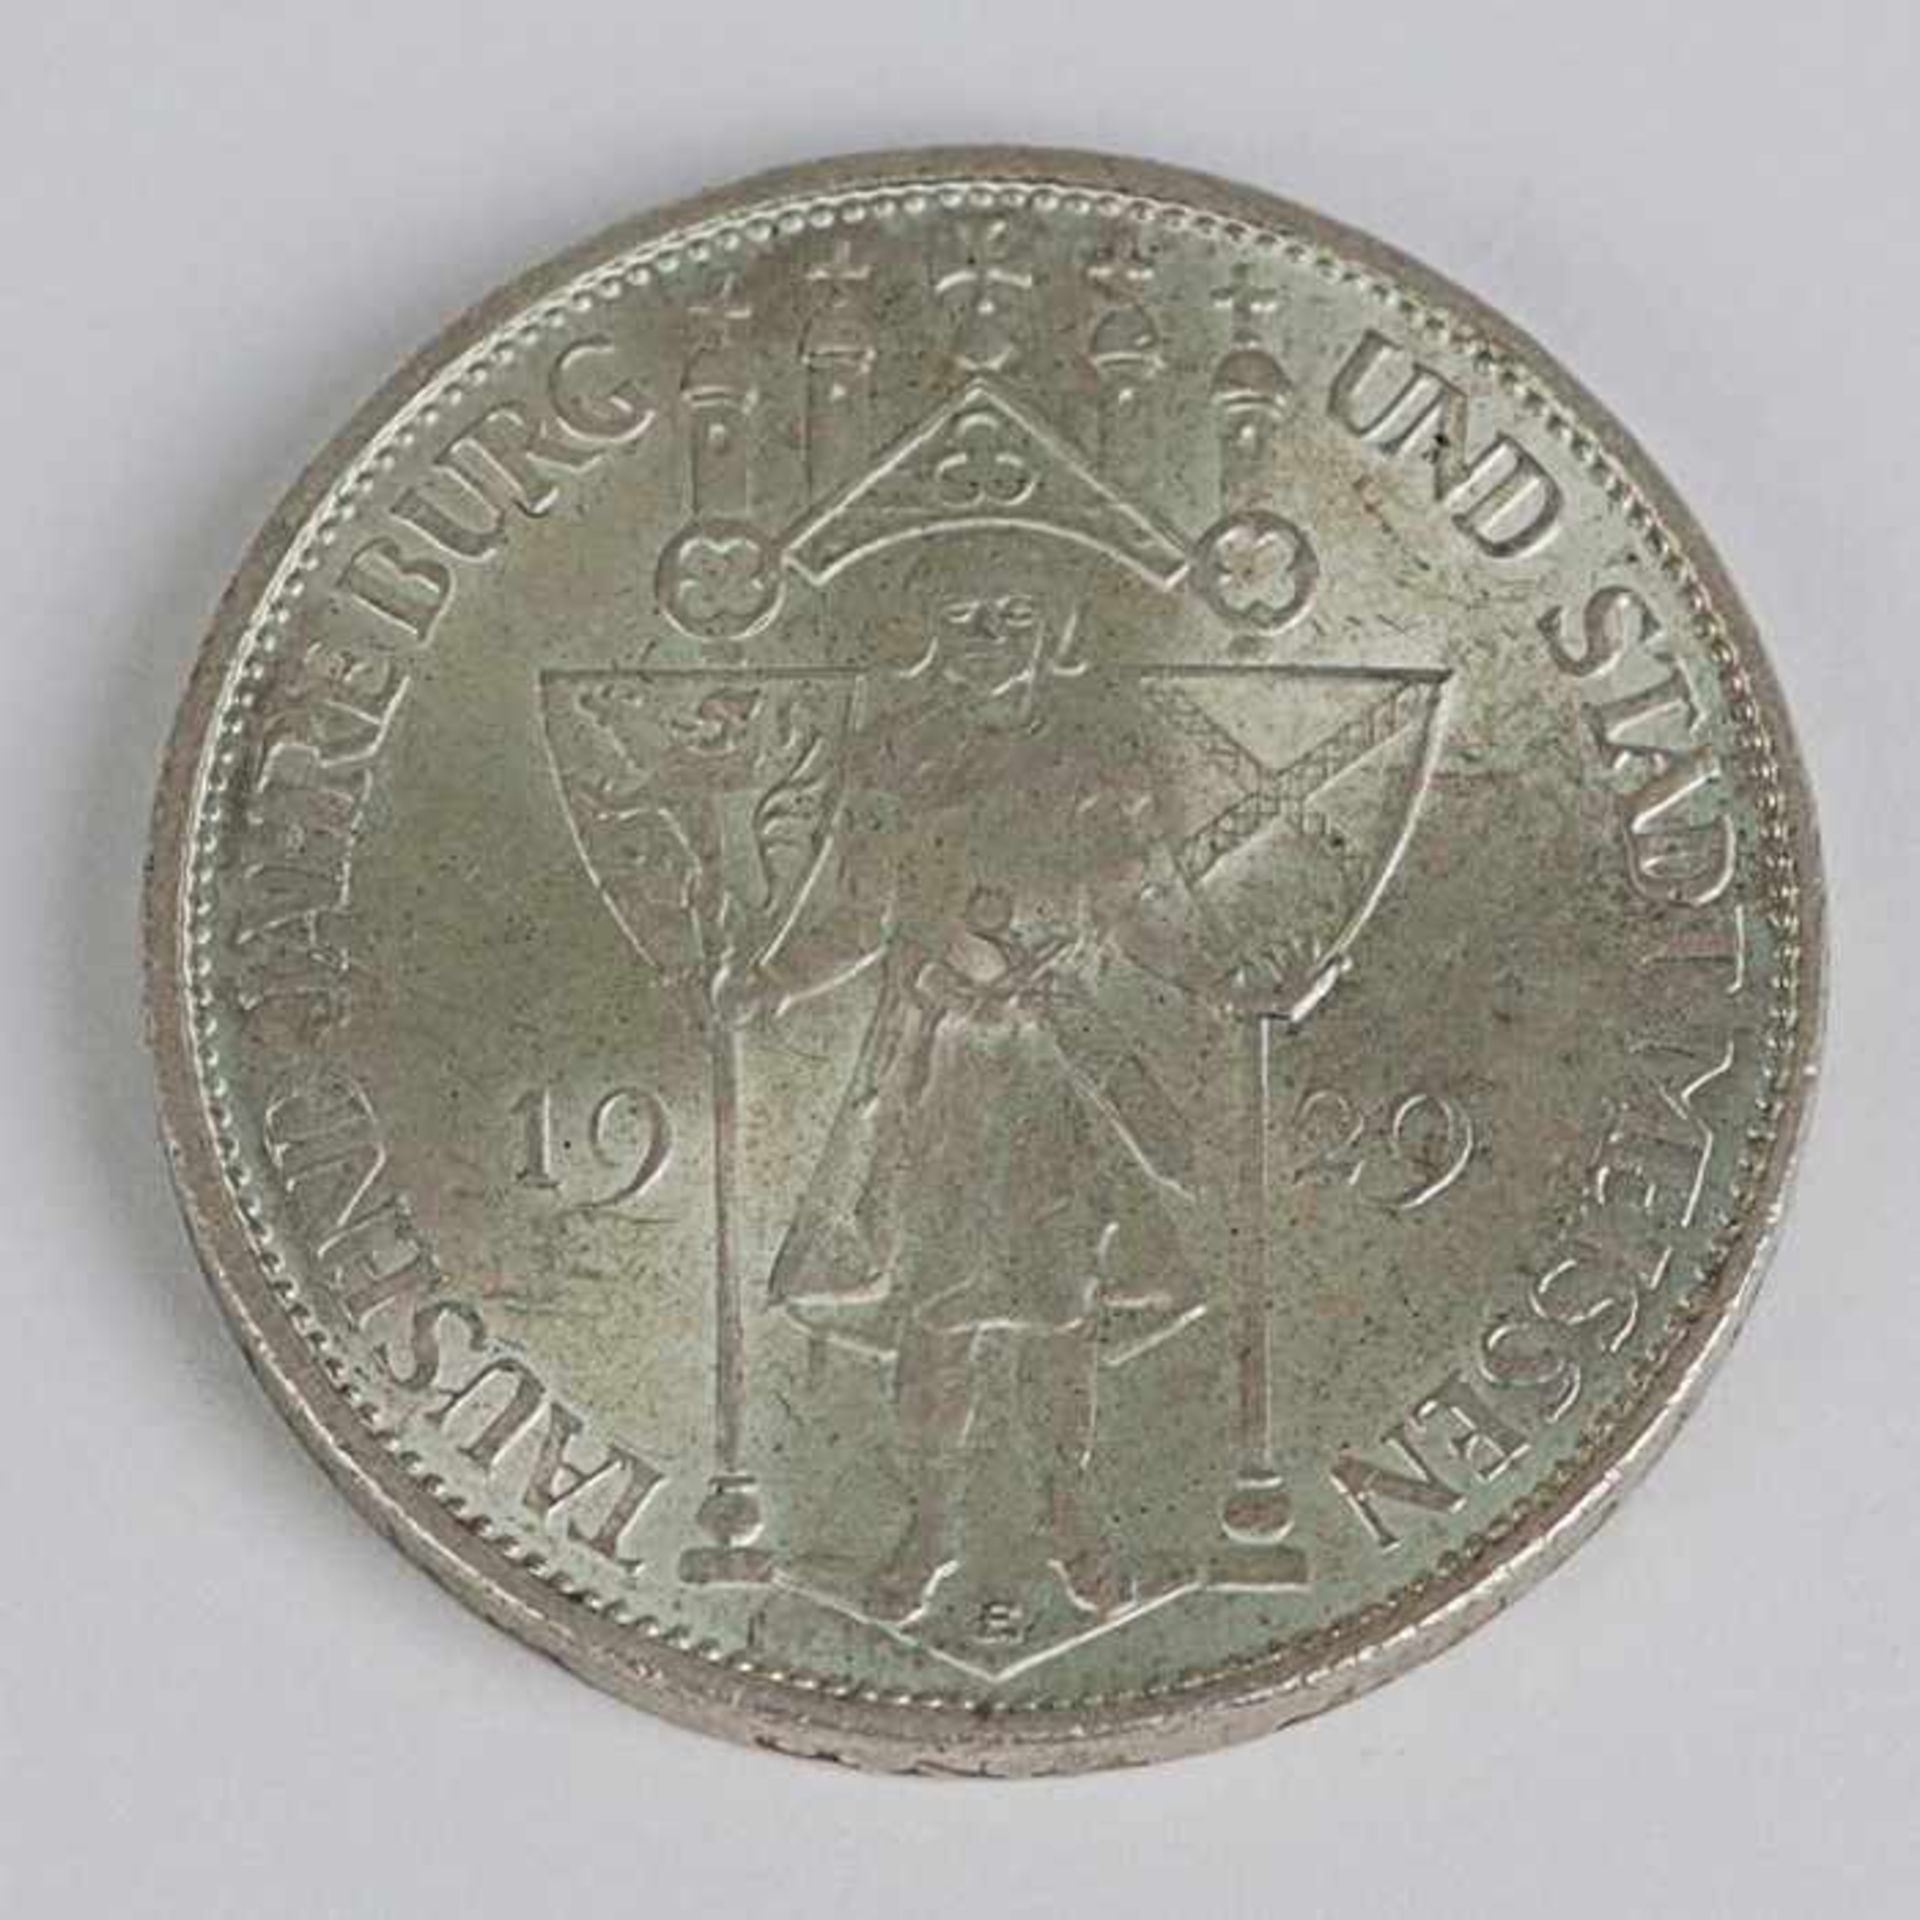 Deutsches ReichSilbermünze, 3 Reichsmark 1929E,Tausend Jahre Burg und Stadt Meissen, ss- vz, Patina- - Image 2 of 2